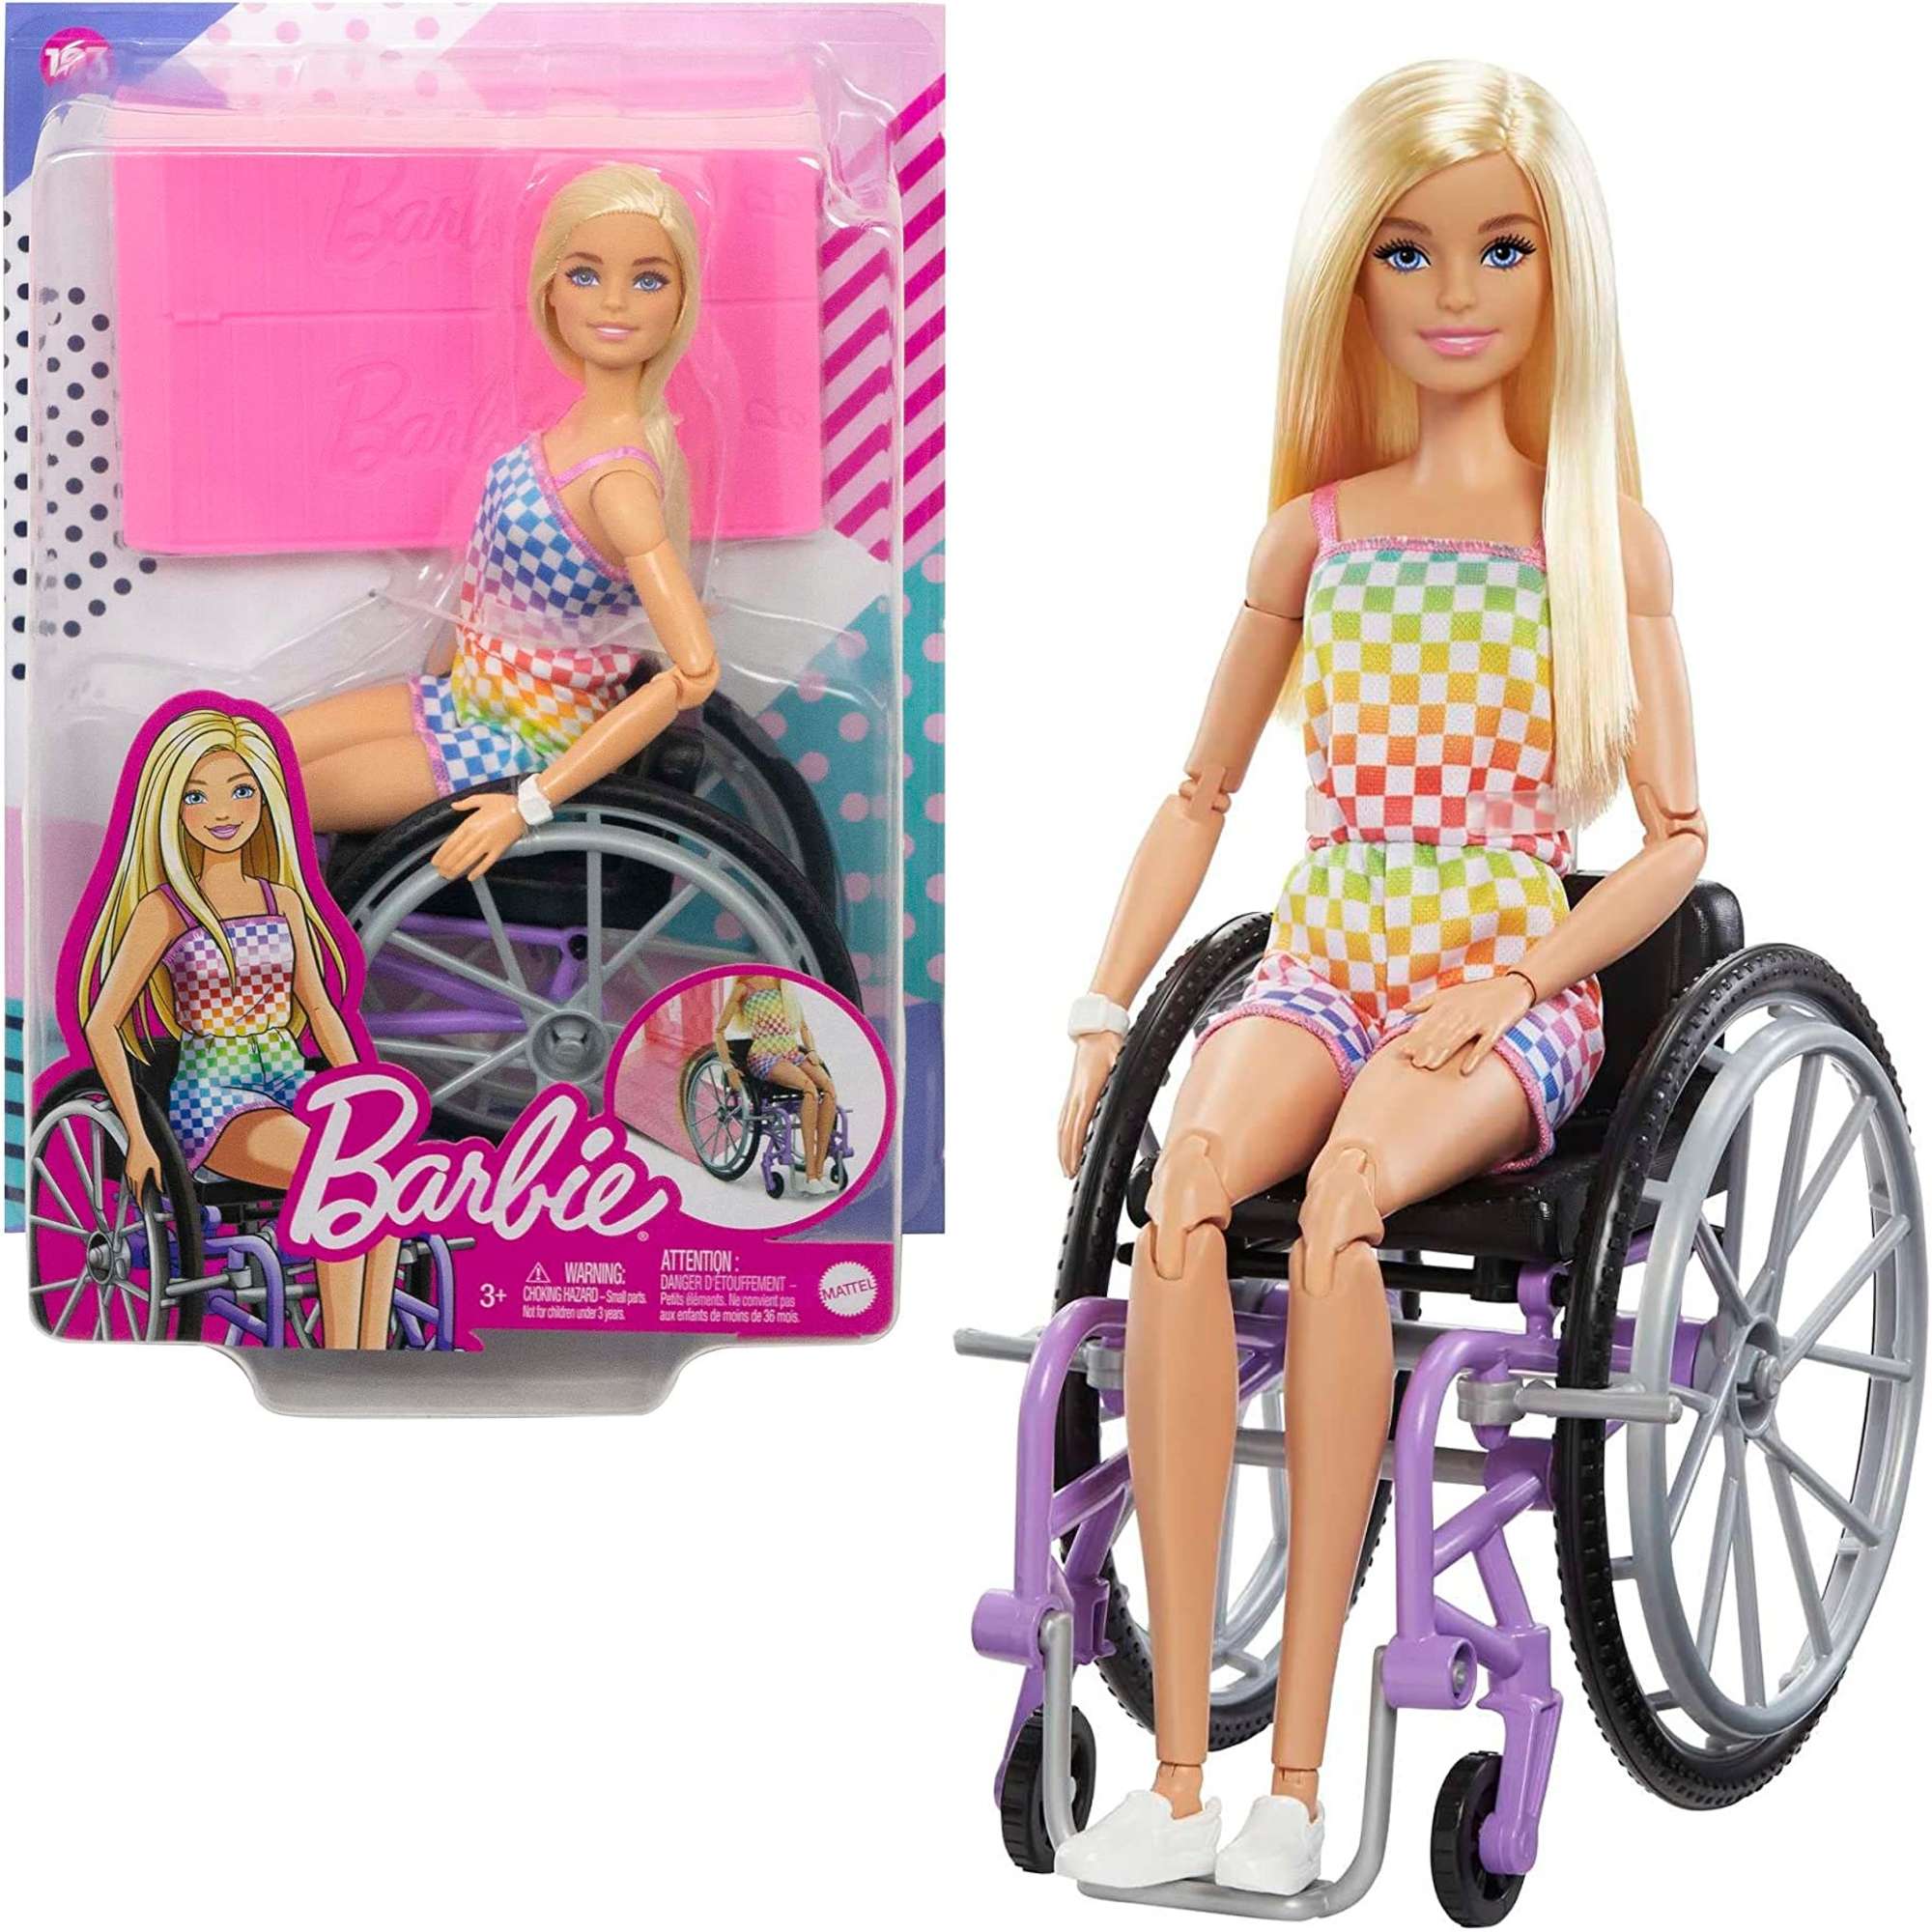 Barbie lalka blondynka na wózku inwalidzkim + rampa